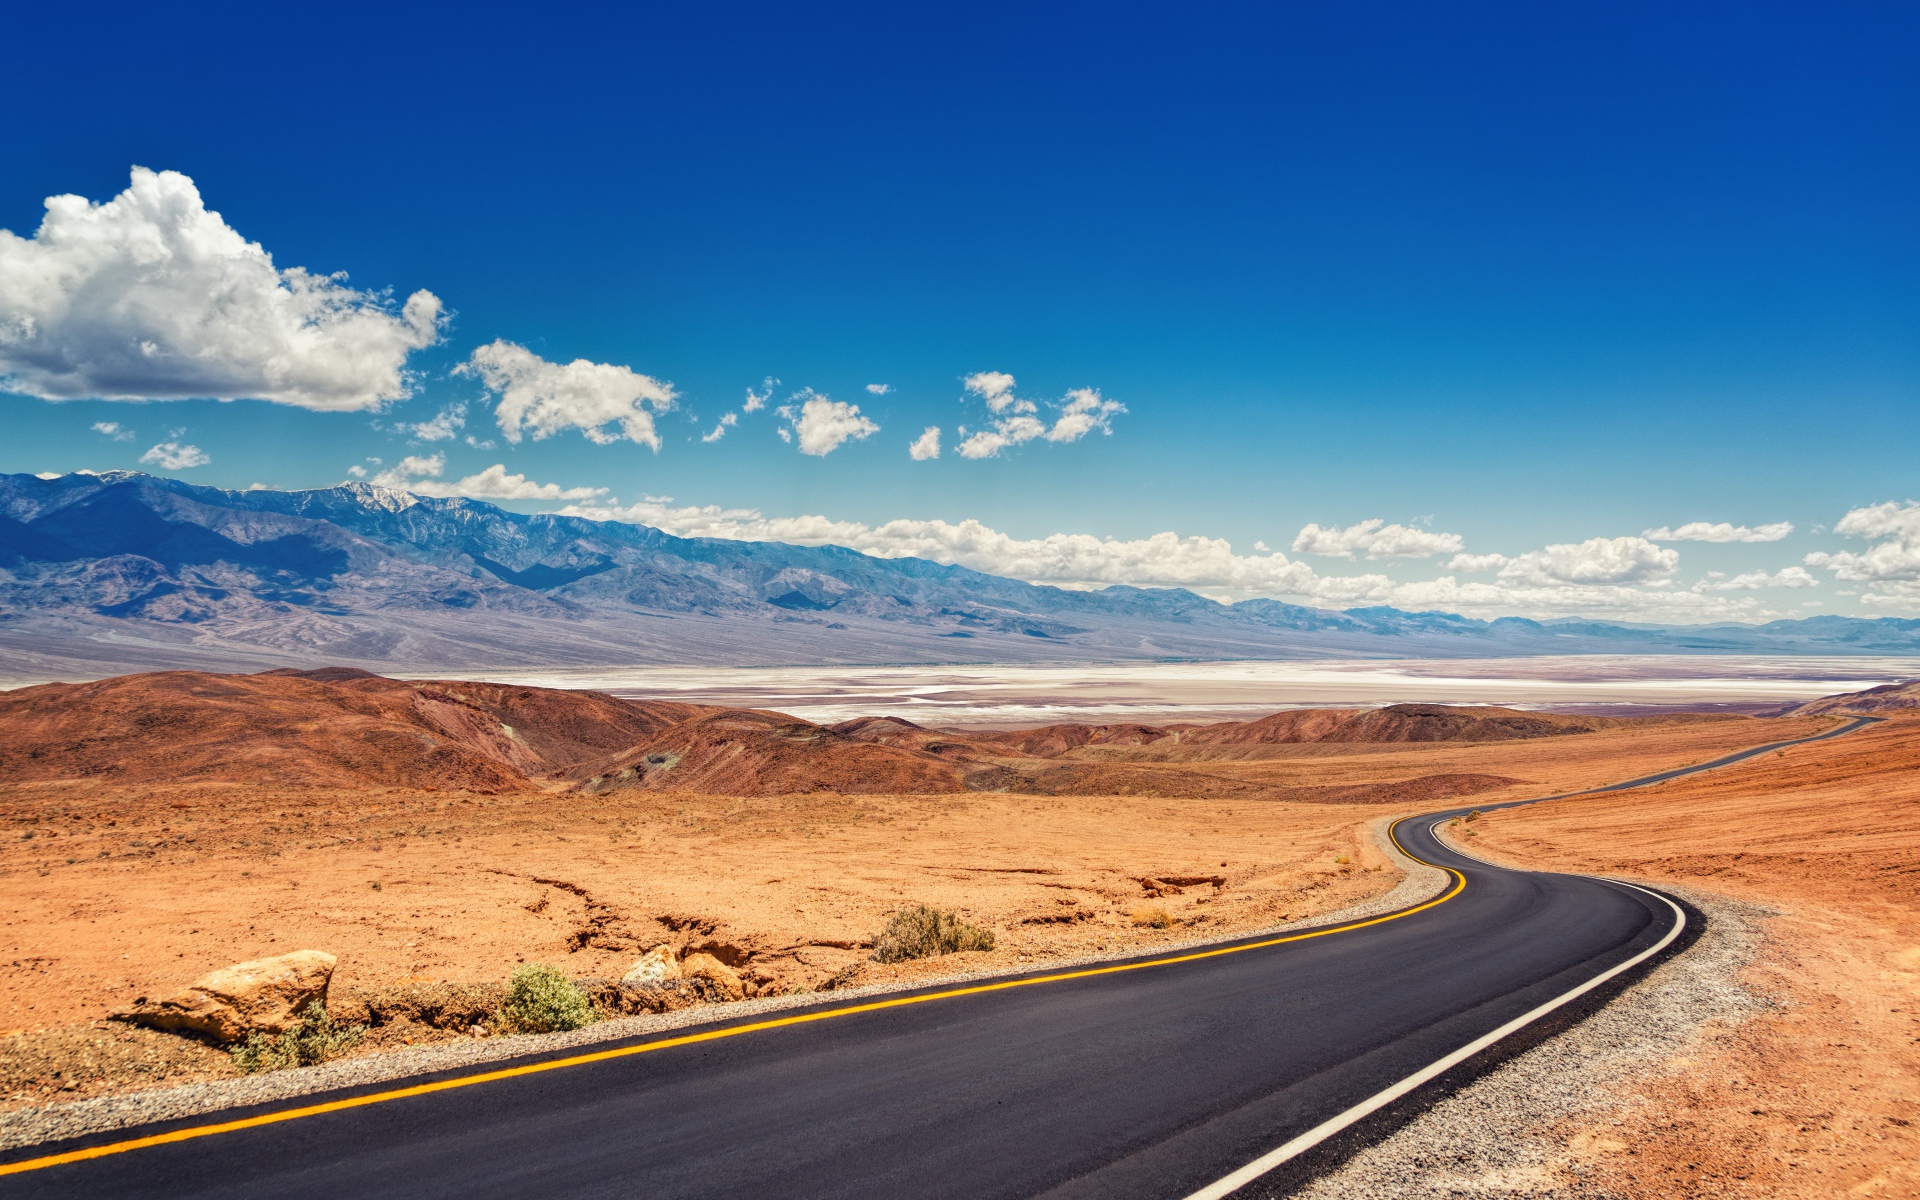 Дорога в пустыне под красивым голубым небом с белыми облаками